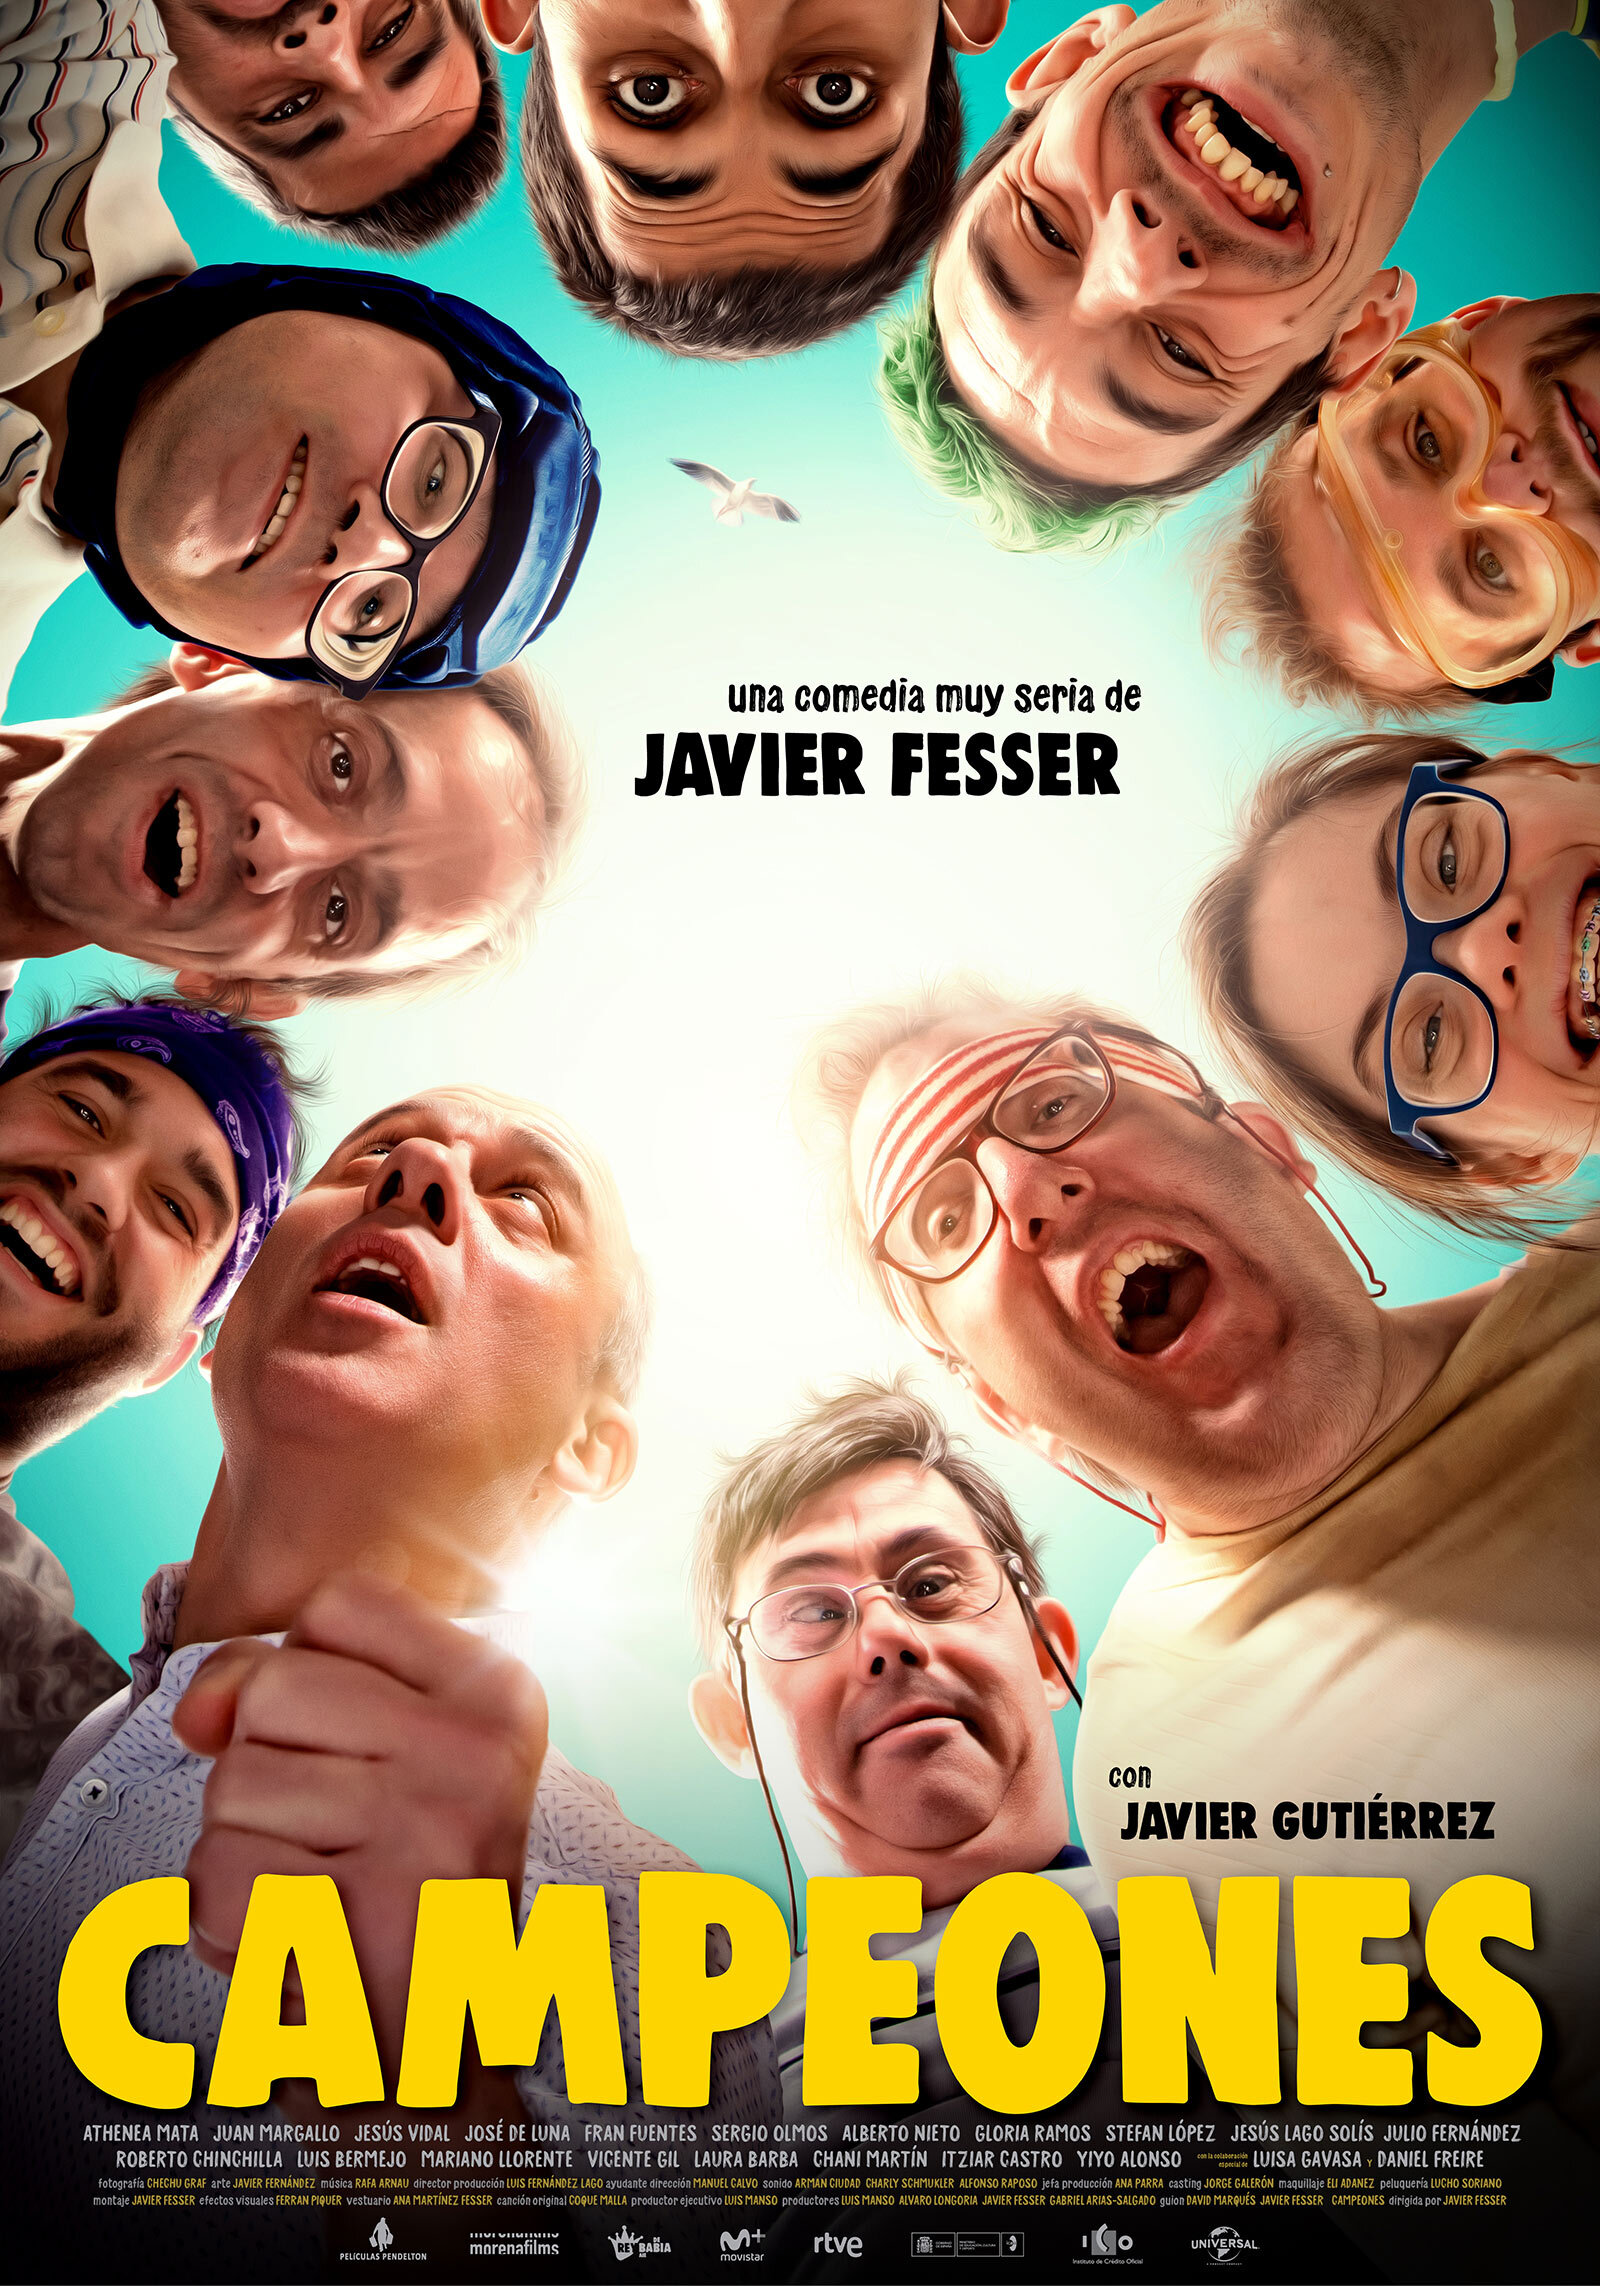 Movie Poster Campiones